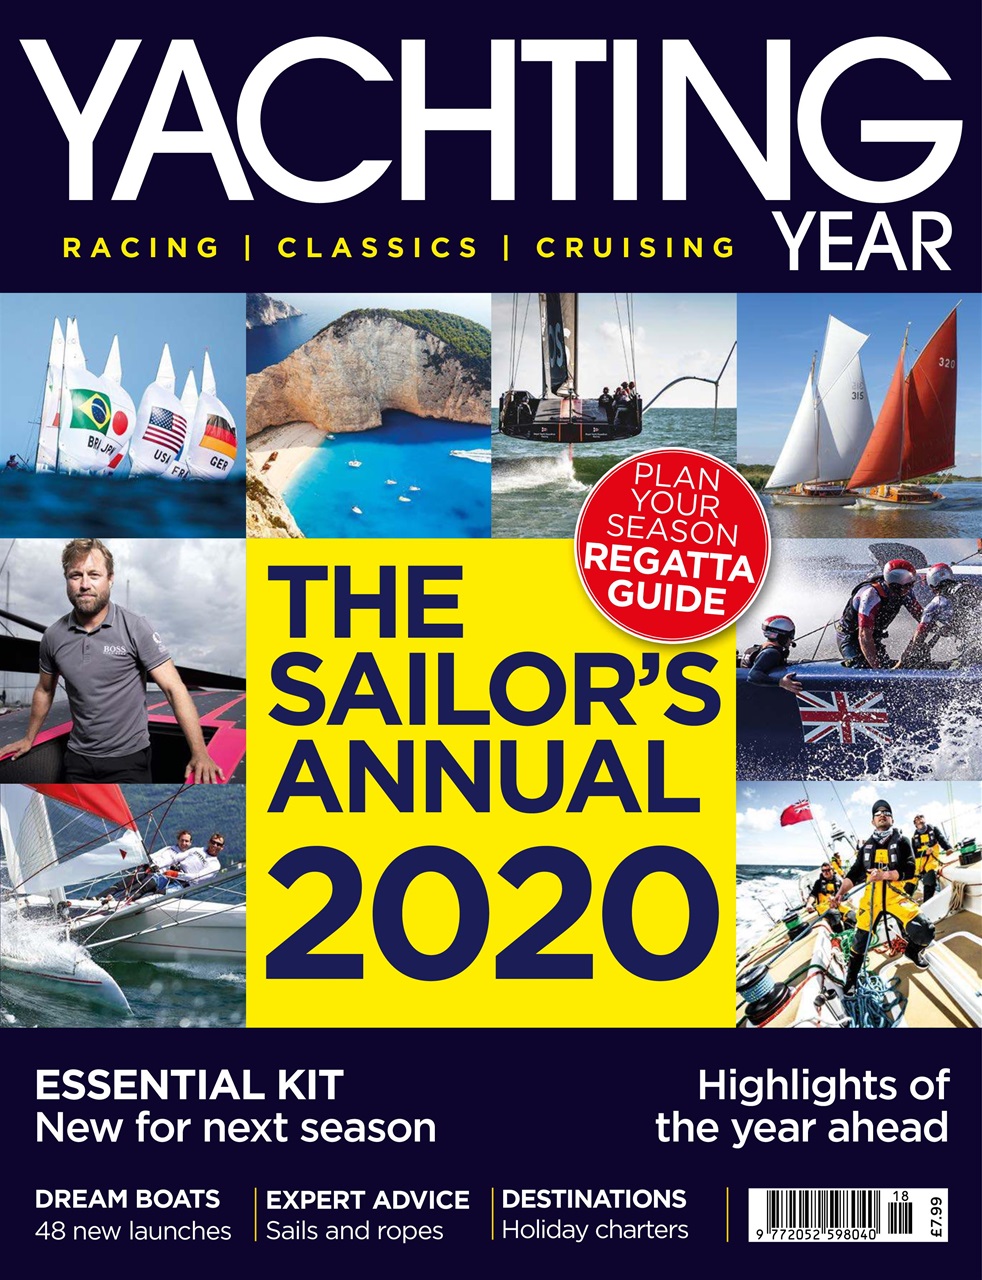 yachting magazine covers